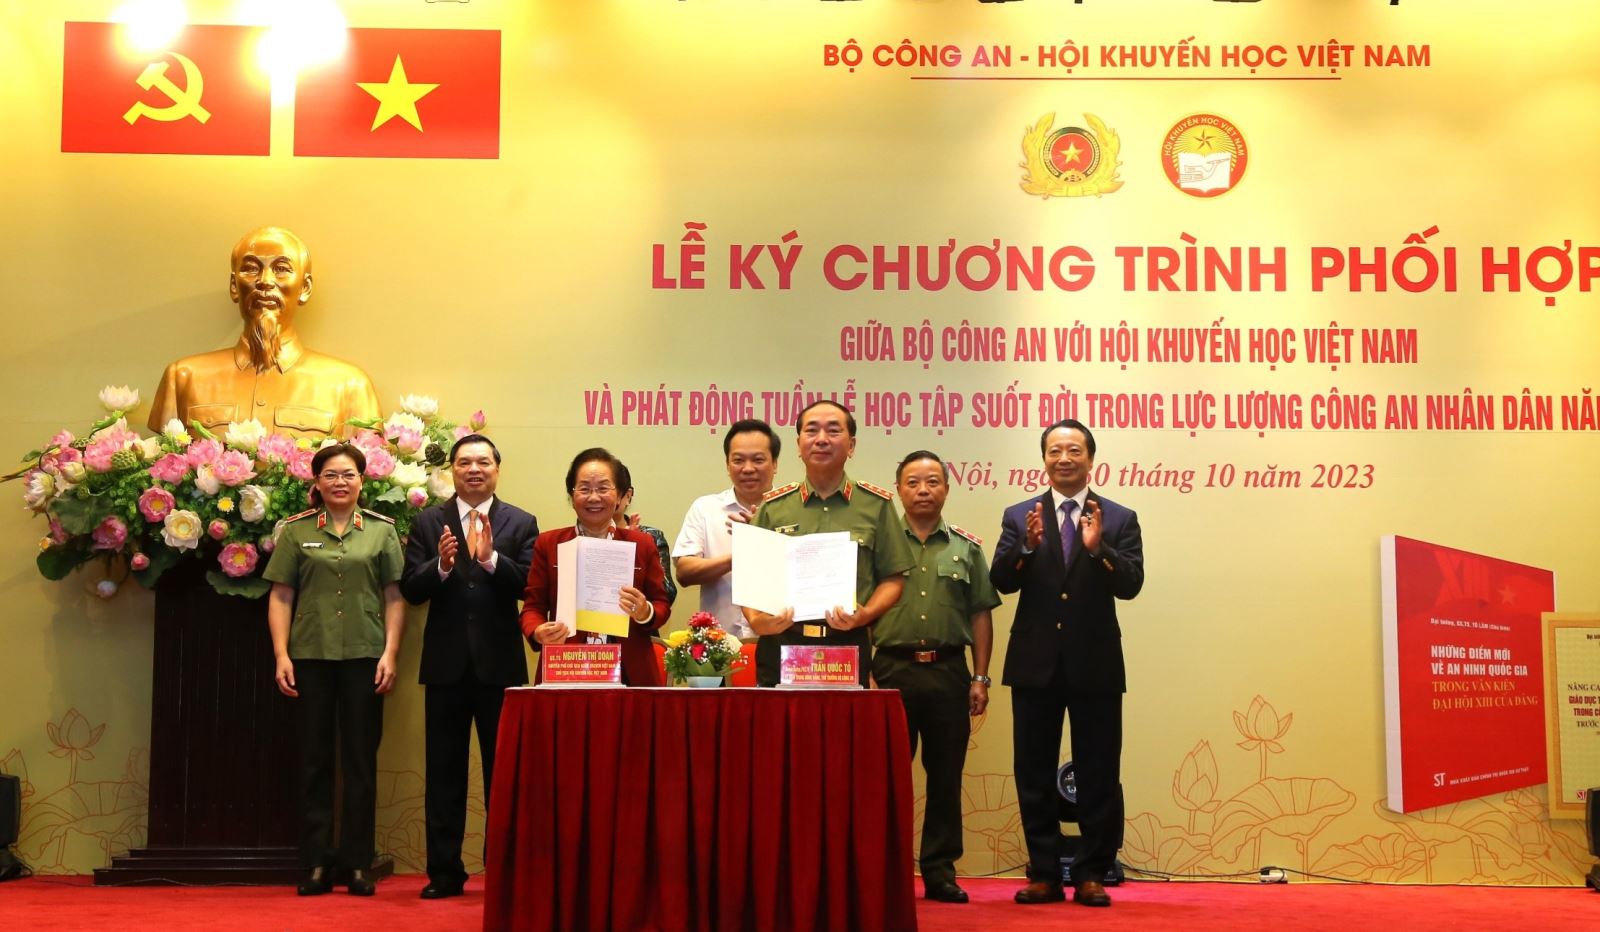 Ký kết chương trình phối hợp giữa Bộ Công an với Hội Khuyến học Việt Nam và phát động “Tuần lễ học tập suốt đời trong CAND” năm 2023